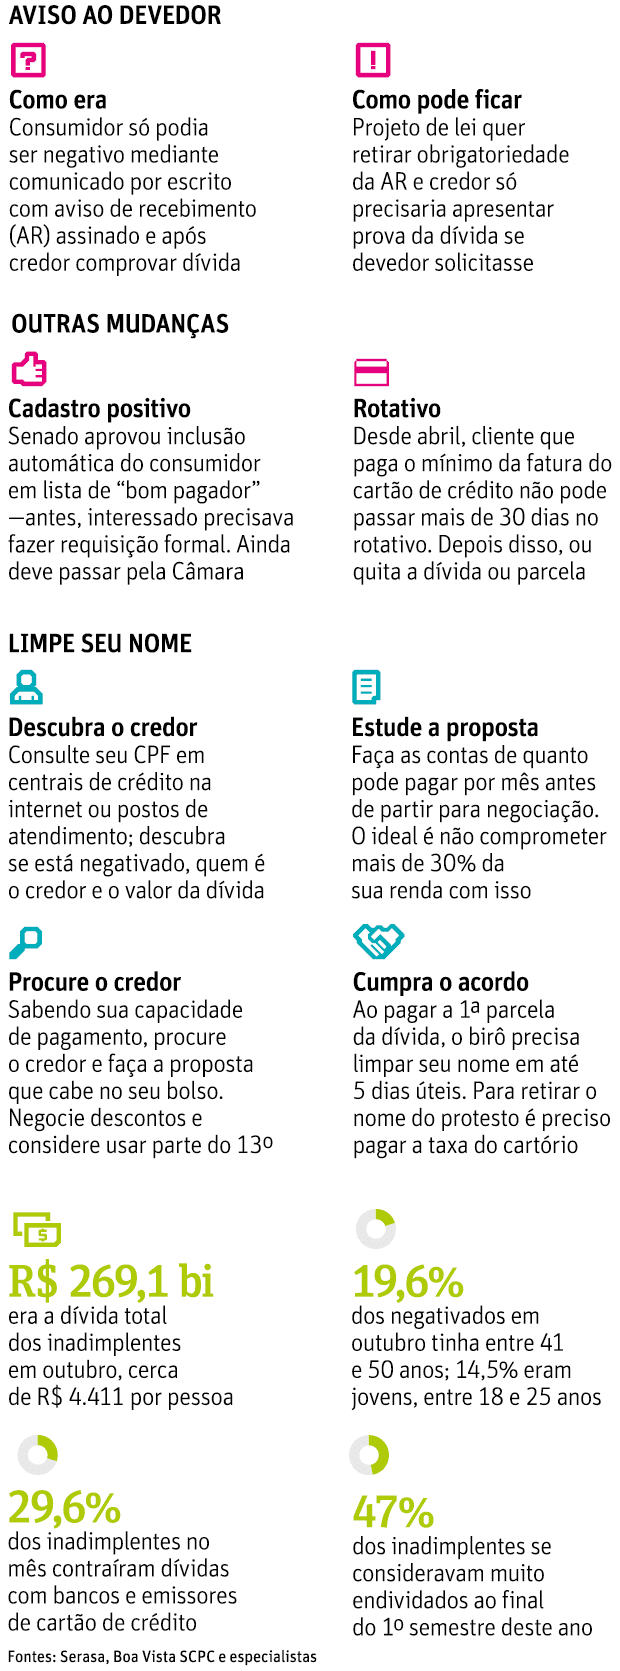 Inadimplncia no brasil em outubro de 2017